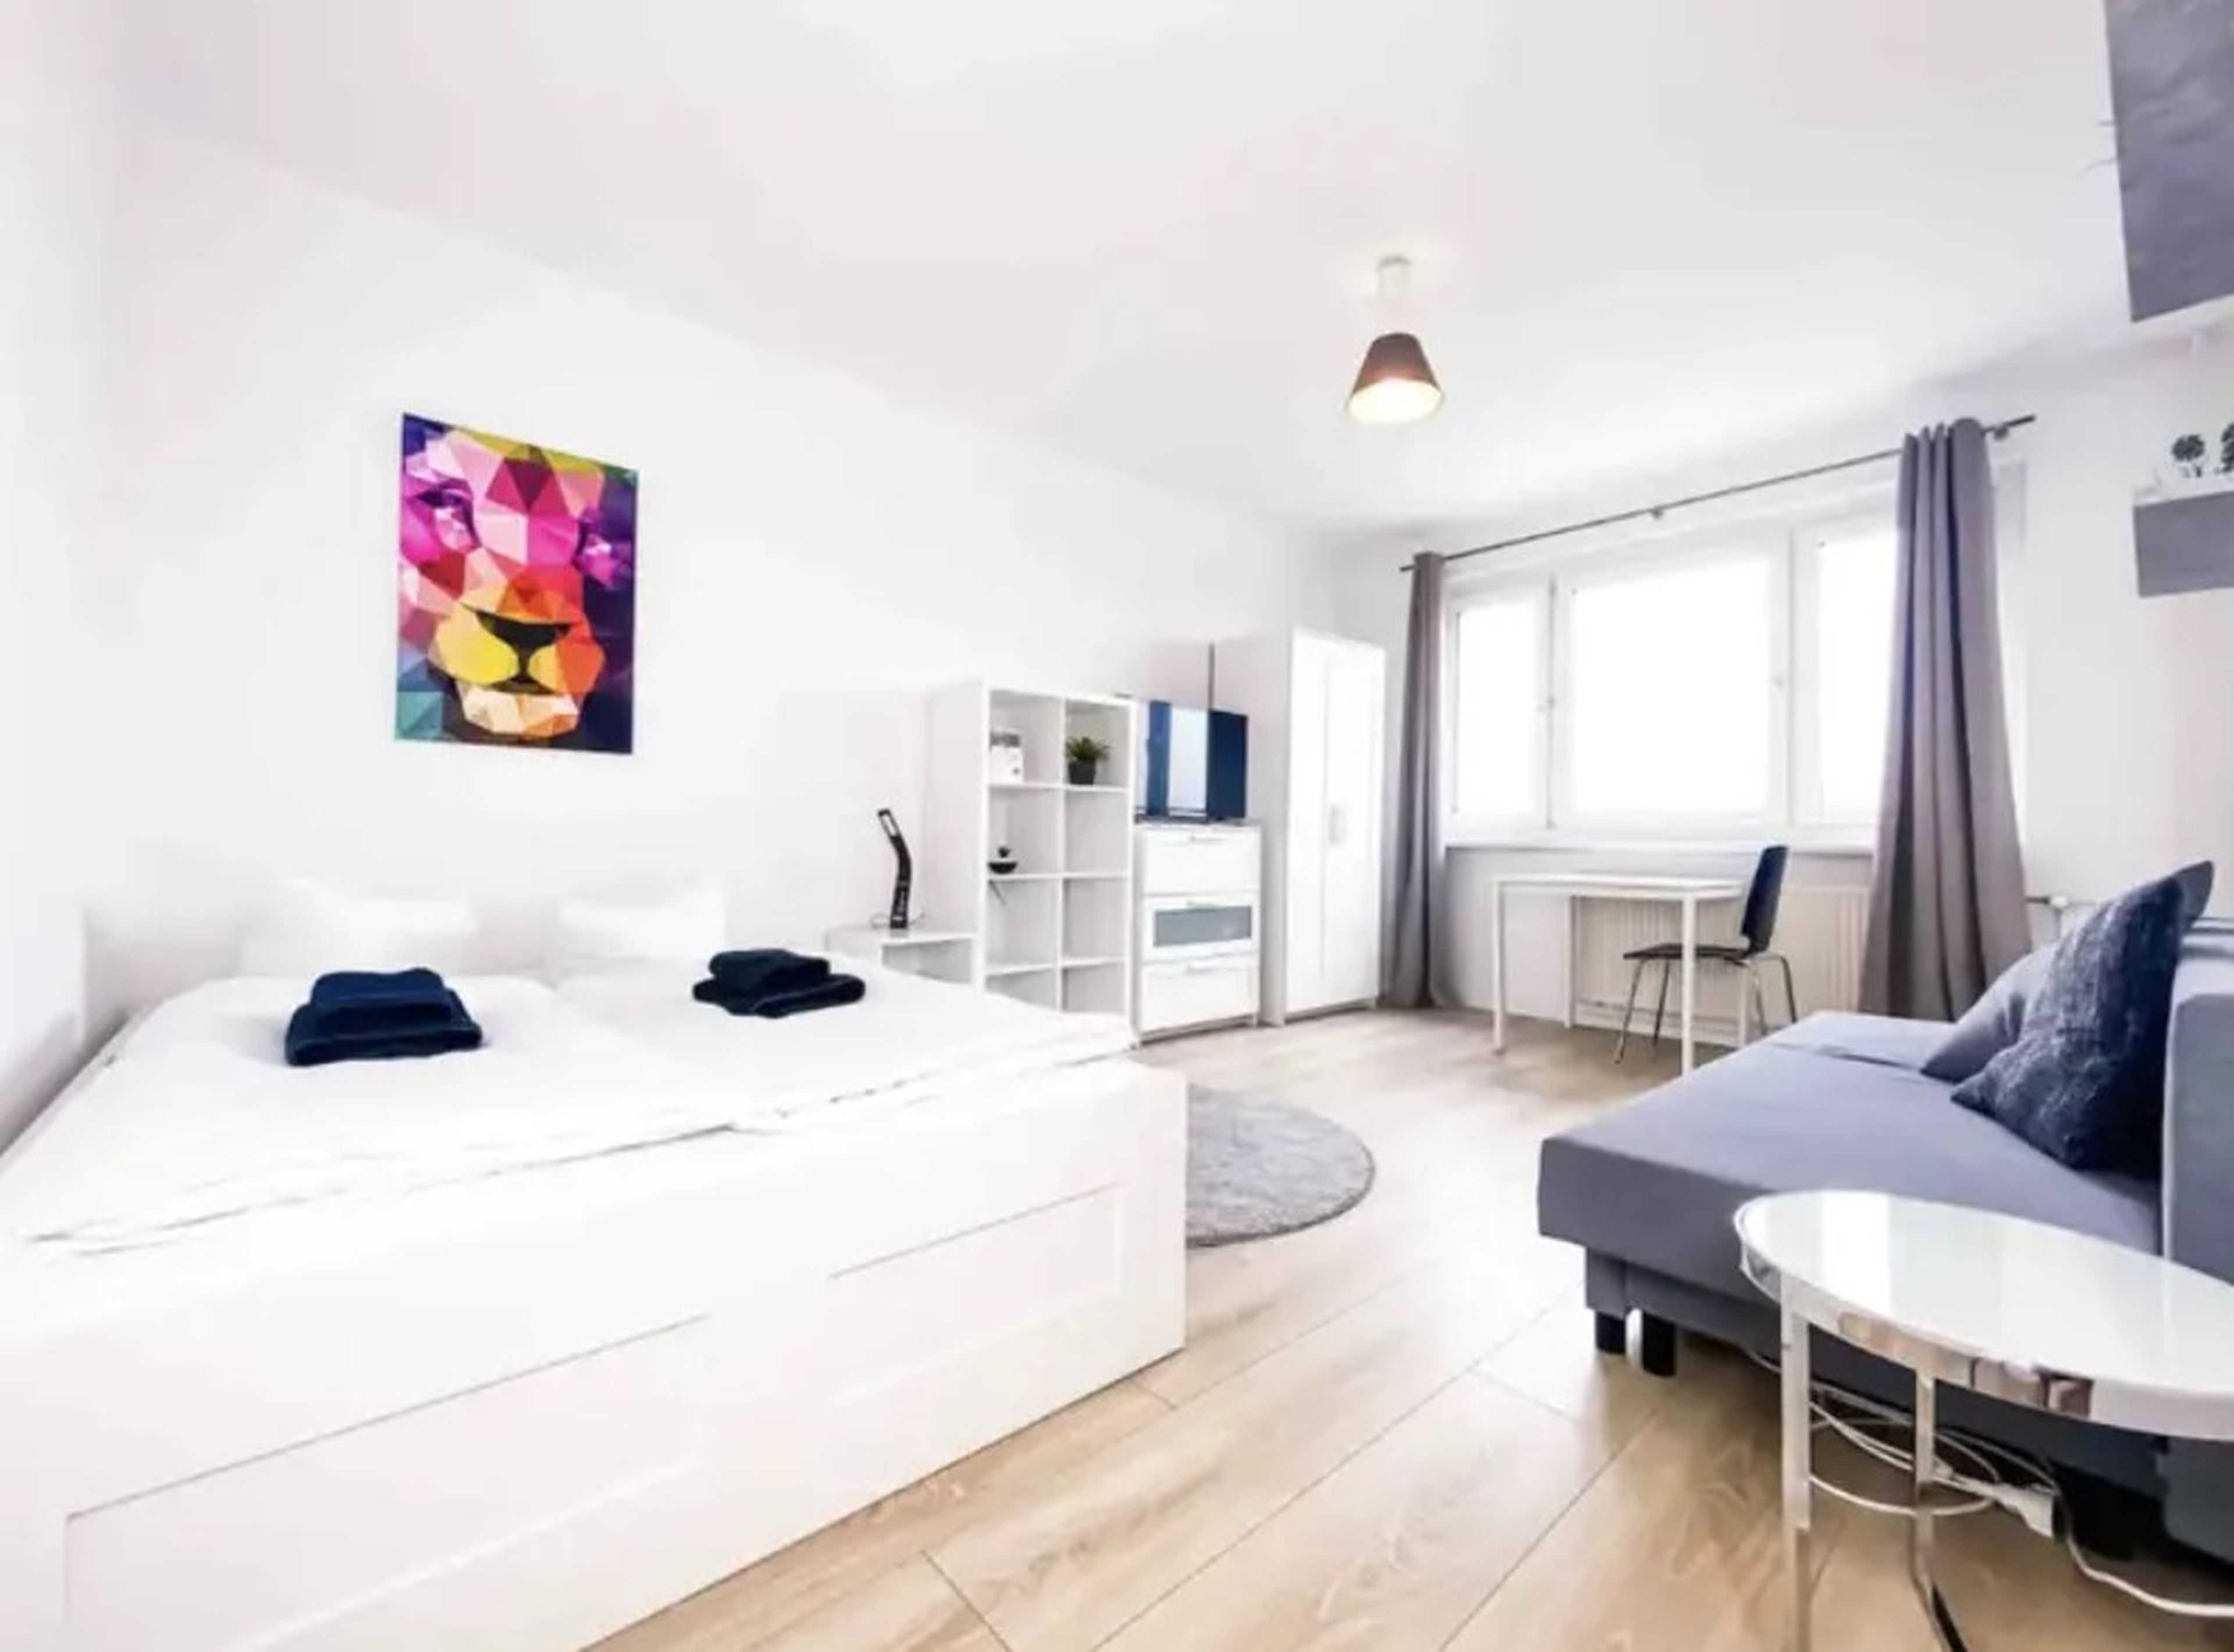 El otro apartamento de Airbnb de Müller.